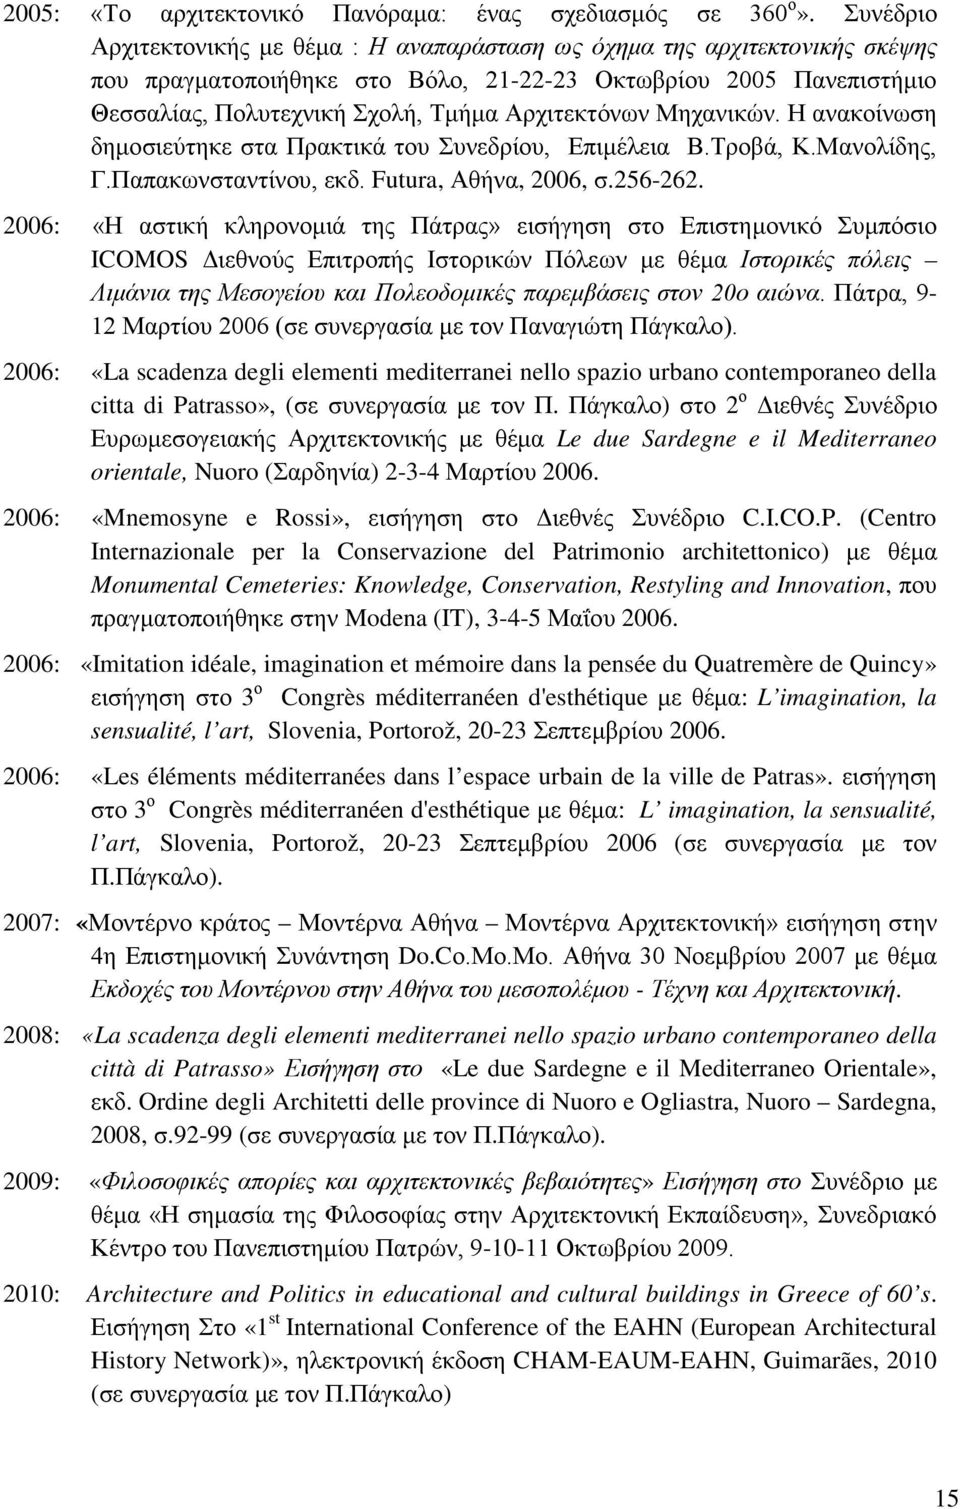 Αρχιτεκτόνων Μηχανικών. Η ανακοίνωση δημοσιεύτηκε στα Πρακτικά του Συνεδρίου, Επιμέλεια Β.Τροβά, Κ.Μανολίδης, Γ.Παπακωνσταντίνου, εκδ. Futura, Αθήνα, 2006, σ.256-262.